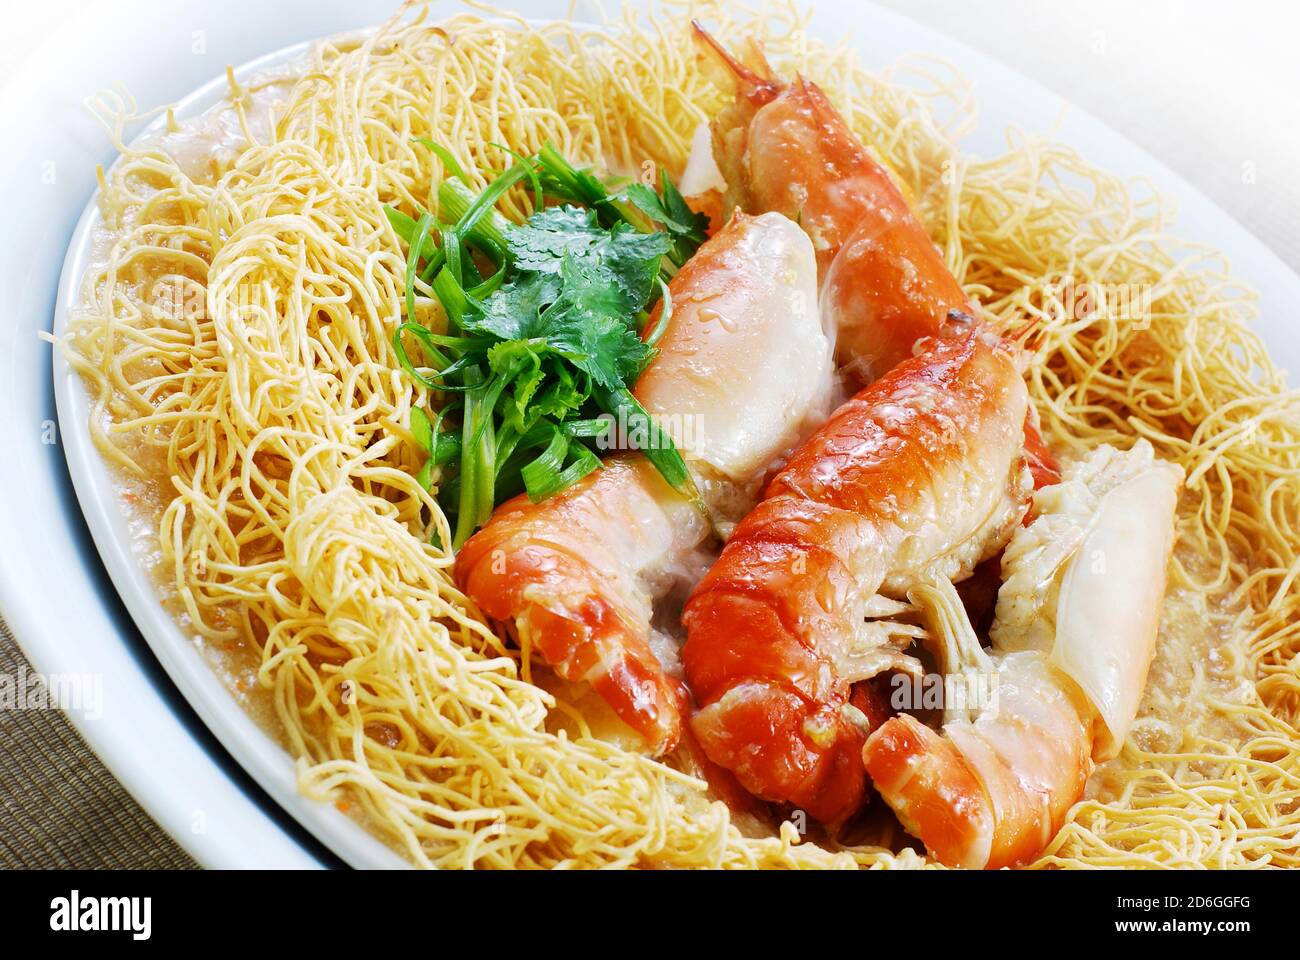 Cuisine asiatique nouilles frites aux crevettes géantes d'eau douce Banque D'Images